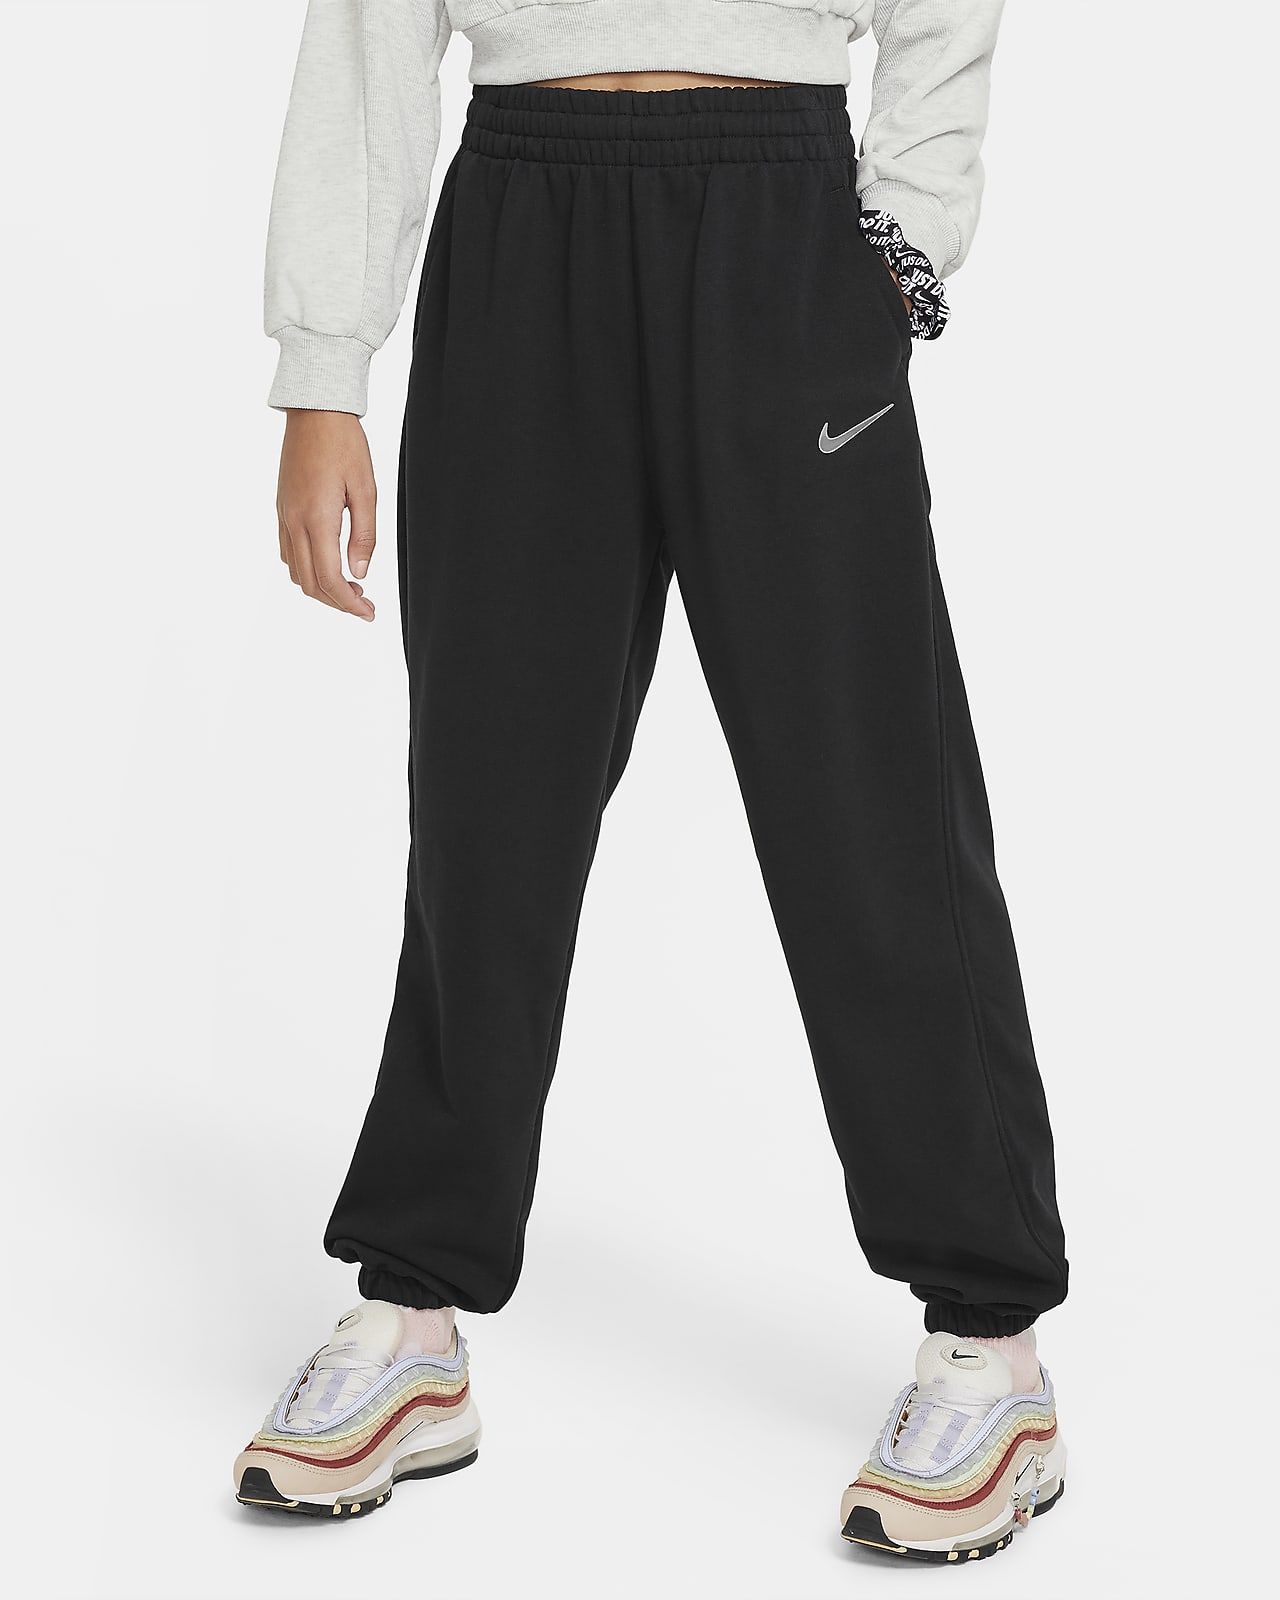 Nike Sportswear Dri-FIT weite Fleece-Jogger für ältere Kinder (Mädchen)